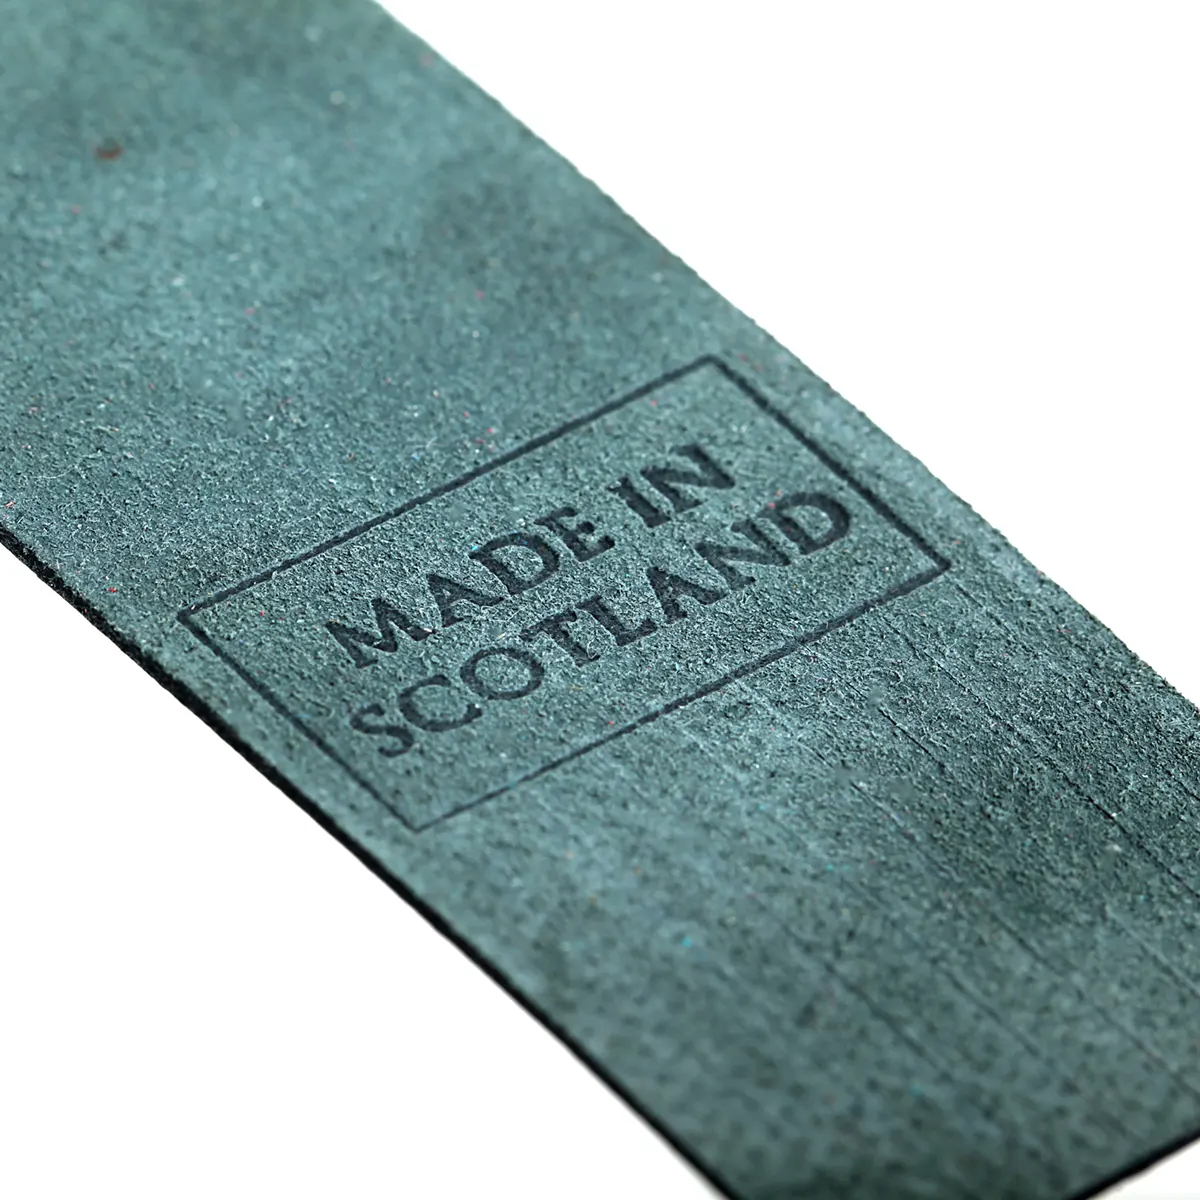 Iona - Lesezeichen aus Leder in Grün - Made in Scotland